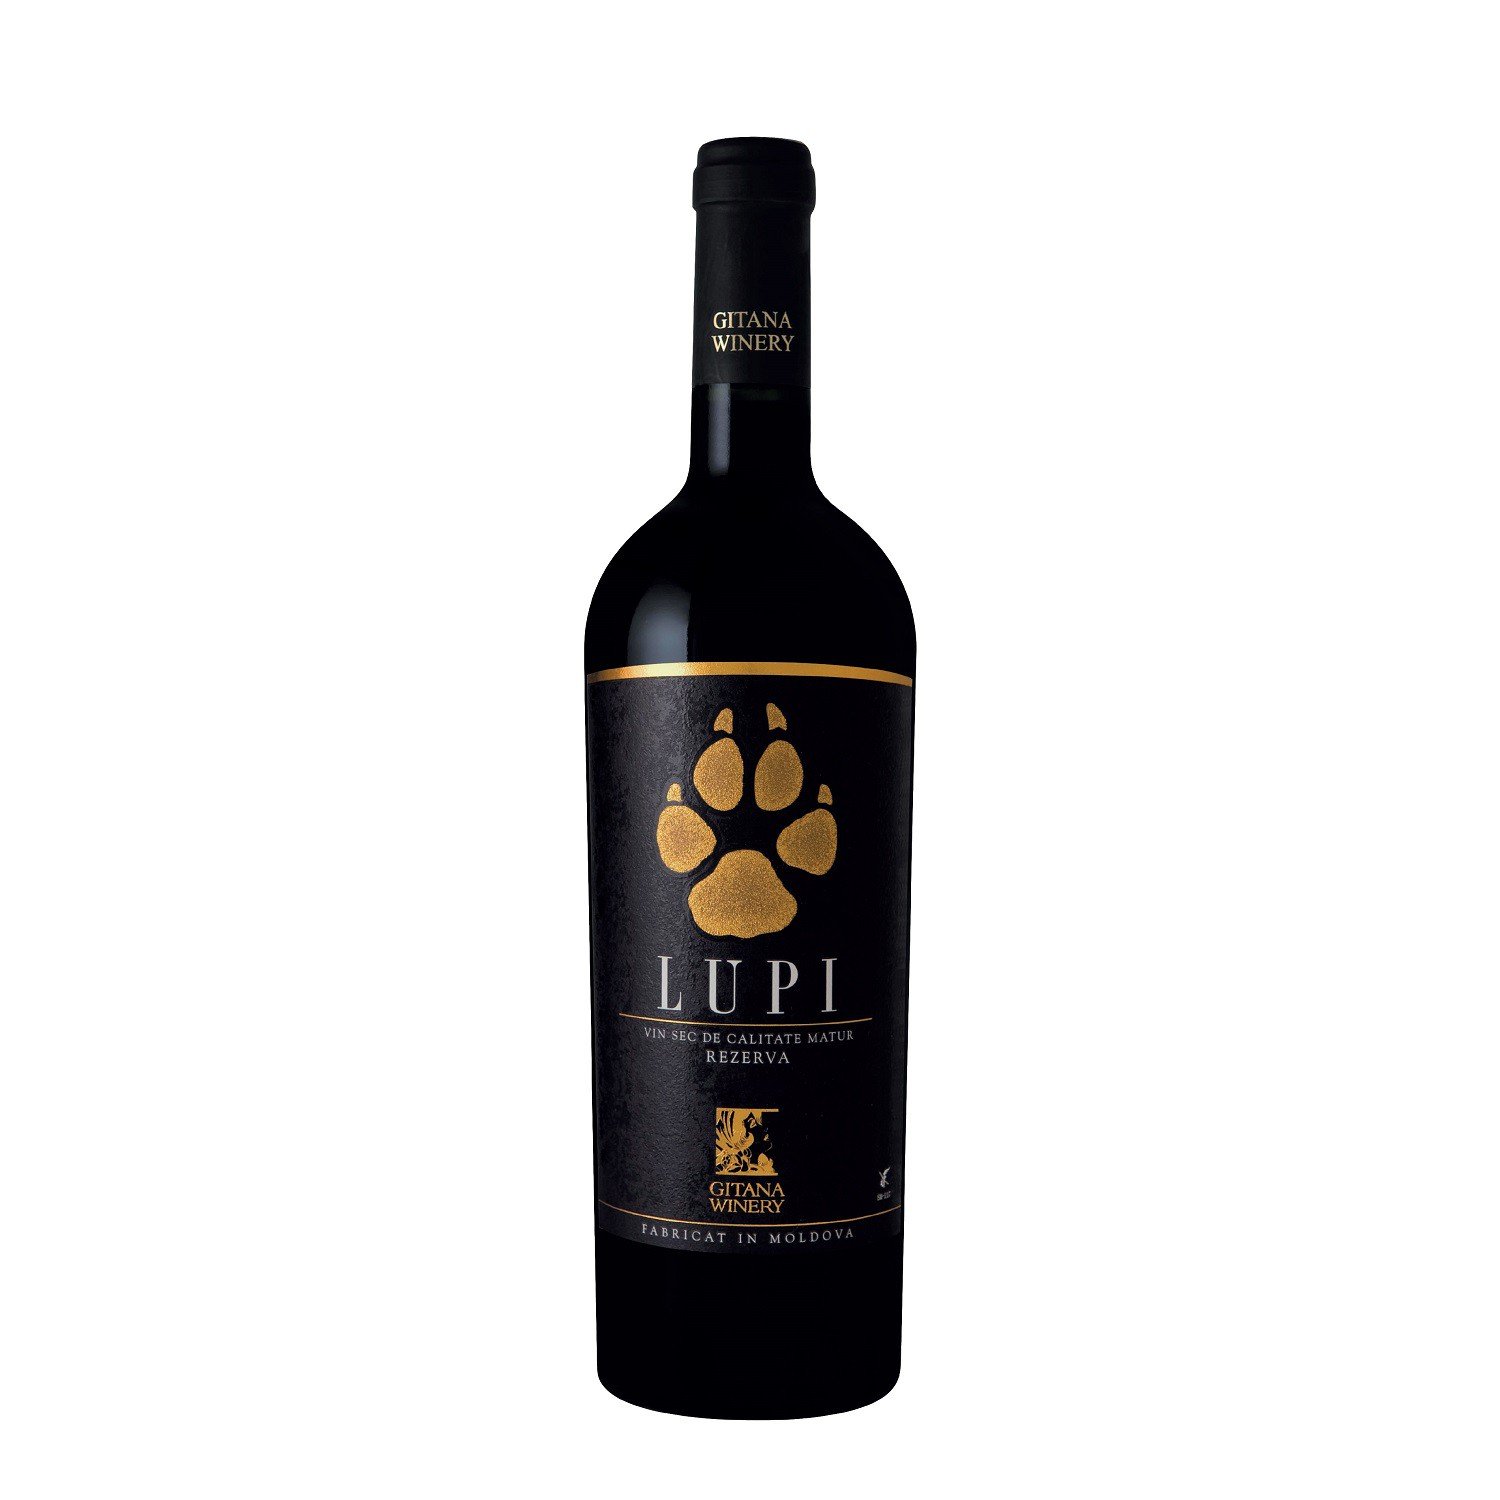 Vin rosu - Gitana Magnum Lupi, Cabernet Sauvignon, sec, 2014 | Gitana Winery